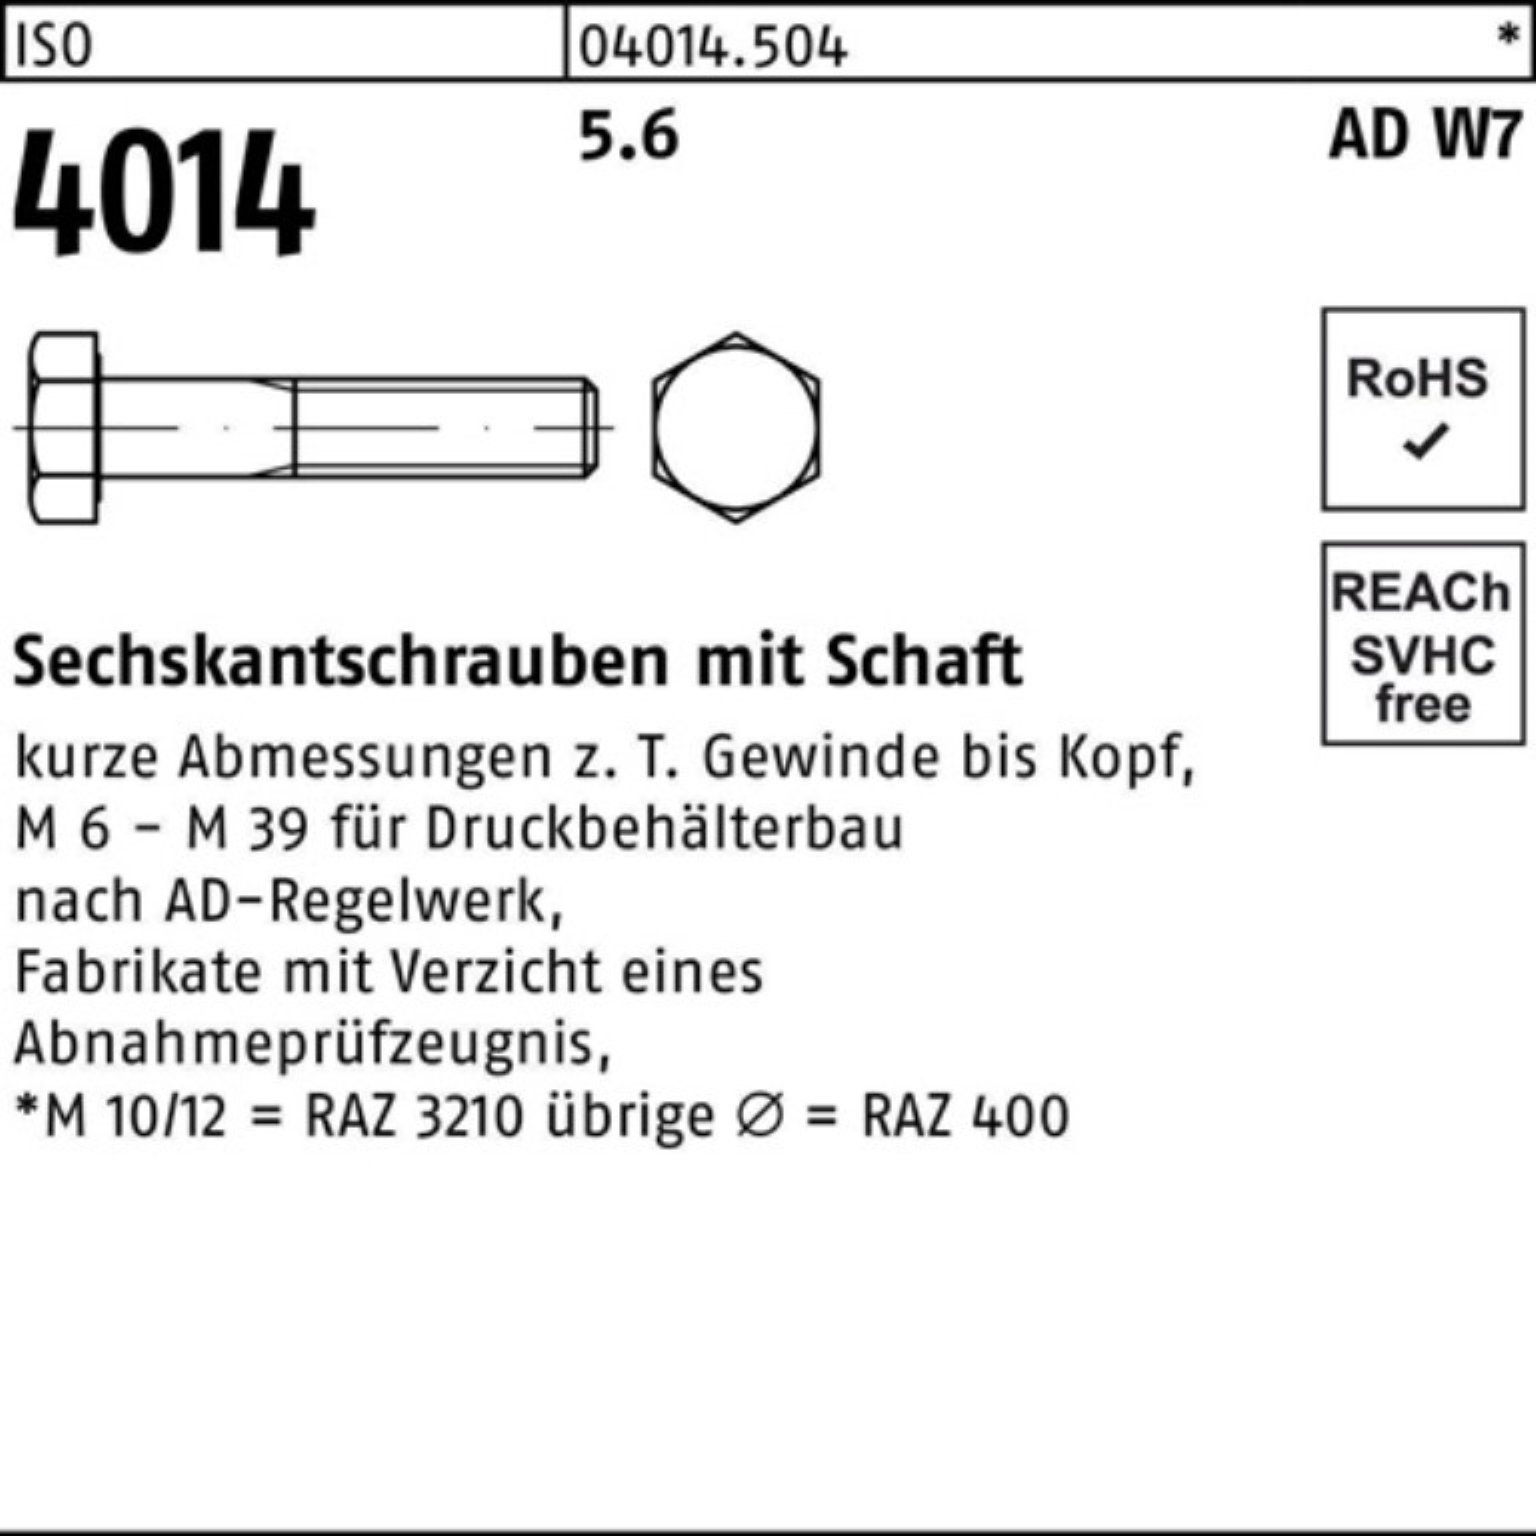 Bufab Sechskantschraube 100er Pack Sechskantschraube Schaft ISO M33x 1 4014 5.6 140 W7 Stück